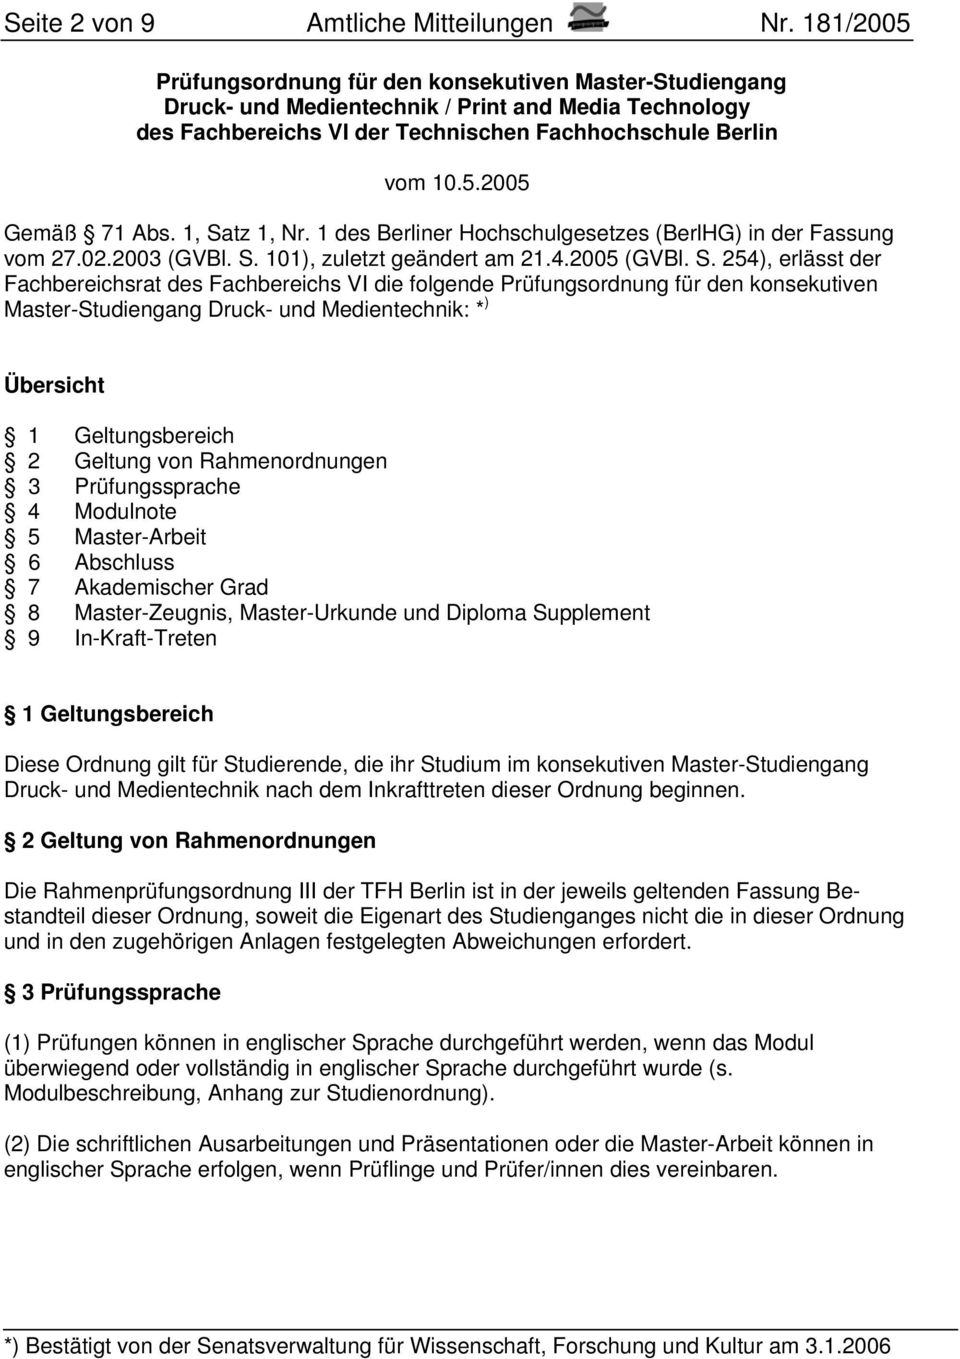 1, Satz 1, Nr. 1 des Berliner Hochschulgesetzes (BerlHG) in der Fassung vom 27.02.2003 (GVBl. S. 101), zuletzt geändert am 21.4.2005 (GVBl. S. 254), erlässt der Fachbereichsrat des Fachbereichs VI